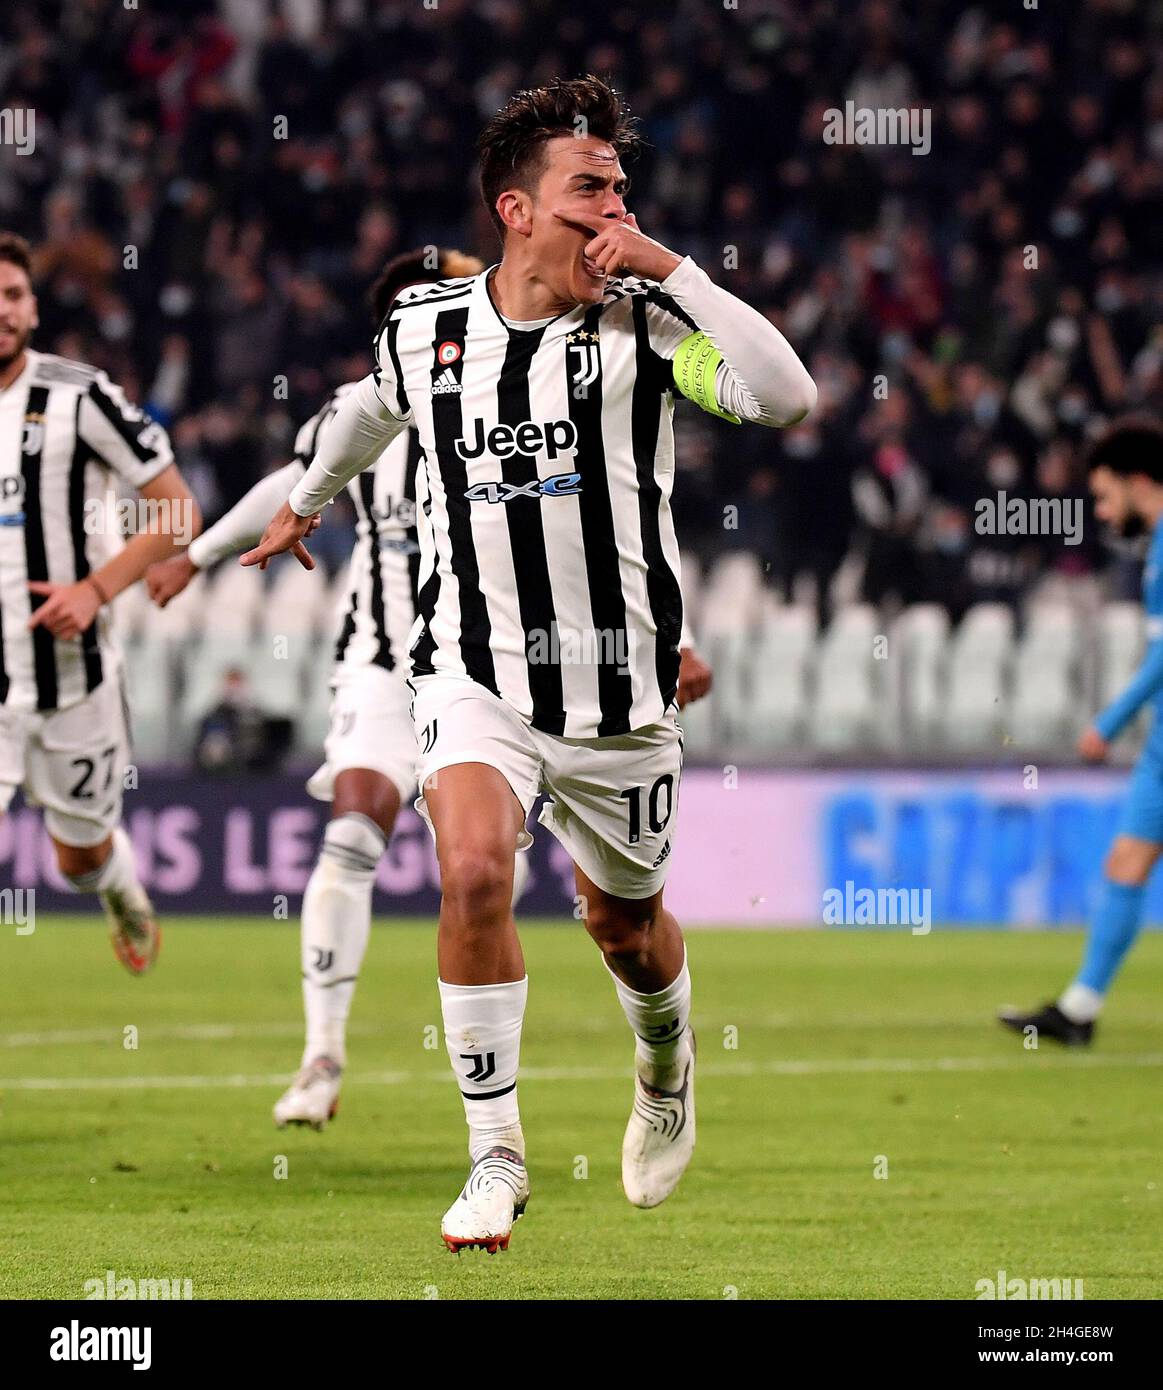 Turin, Italie.2 novembre 2021.Paulo Dybala de Juventus célèbre son but lors  du match H de l'UEFA Champions League entre Juventus d'Italie et Zenit de  Russie à Turin, Italie, le 2 novembre 2021.Credit: